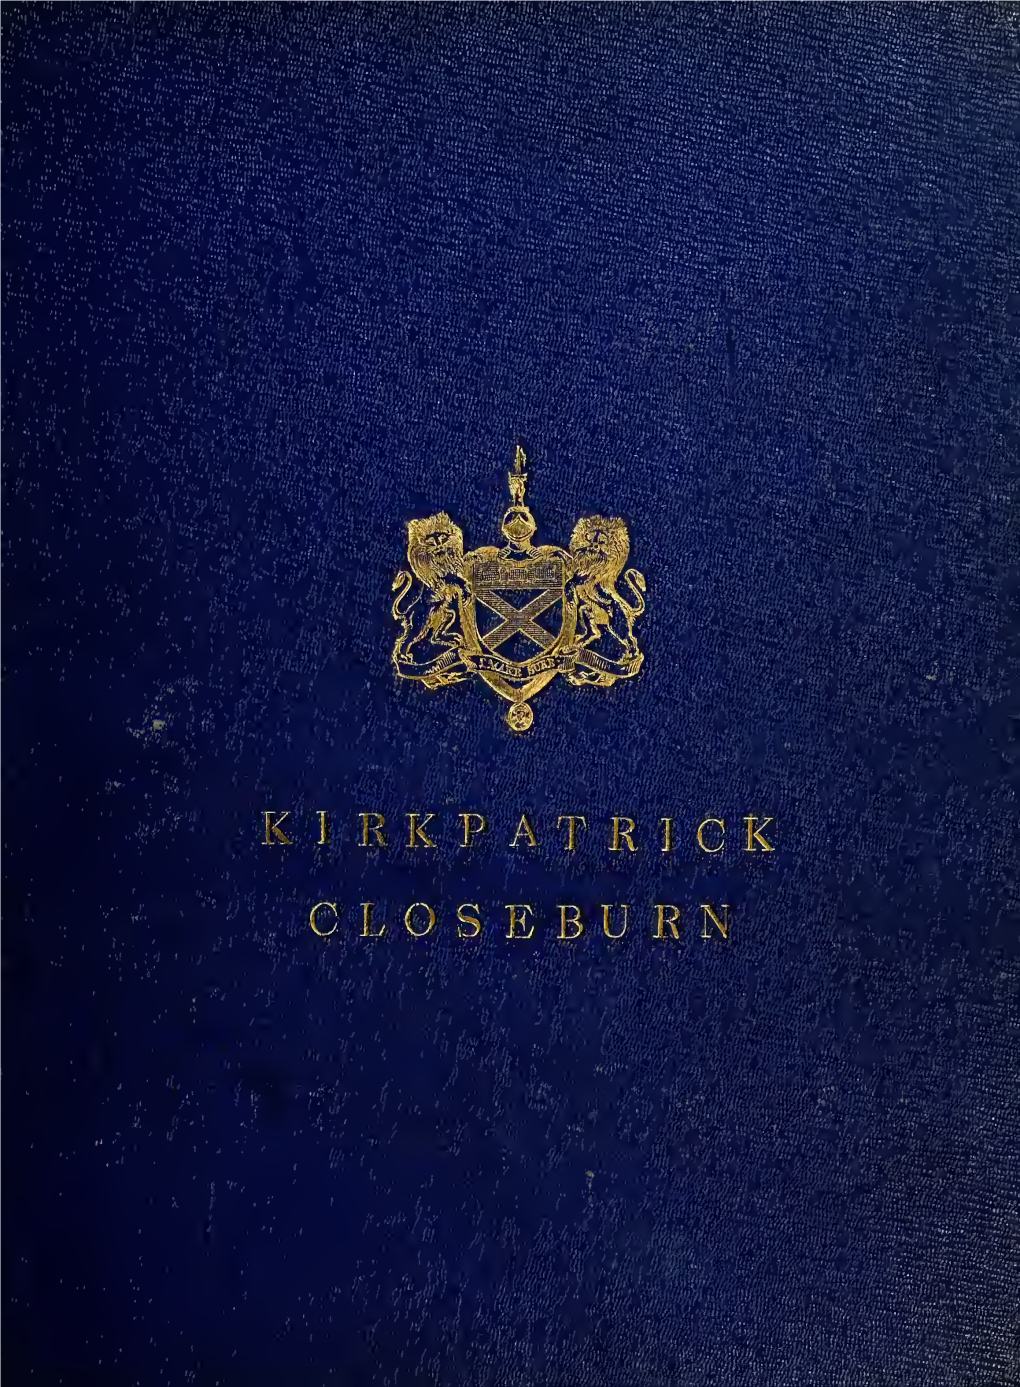 Kirkpatrick of Closeburn